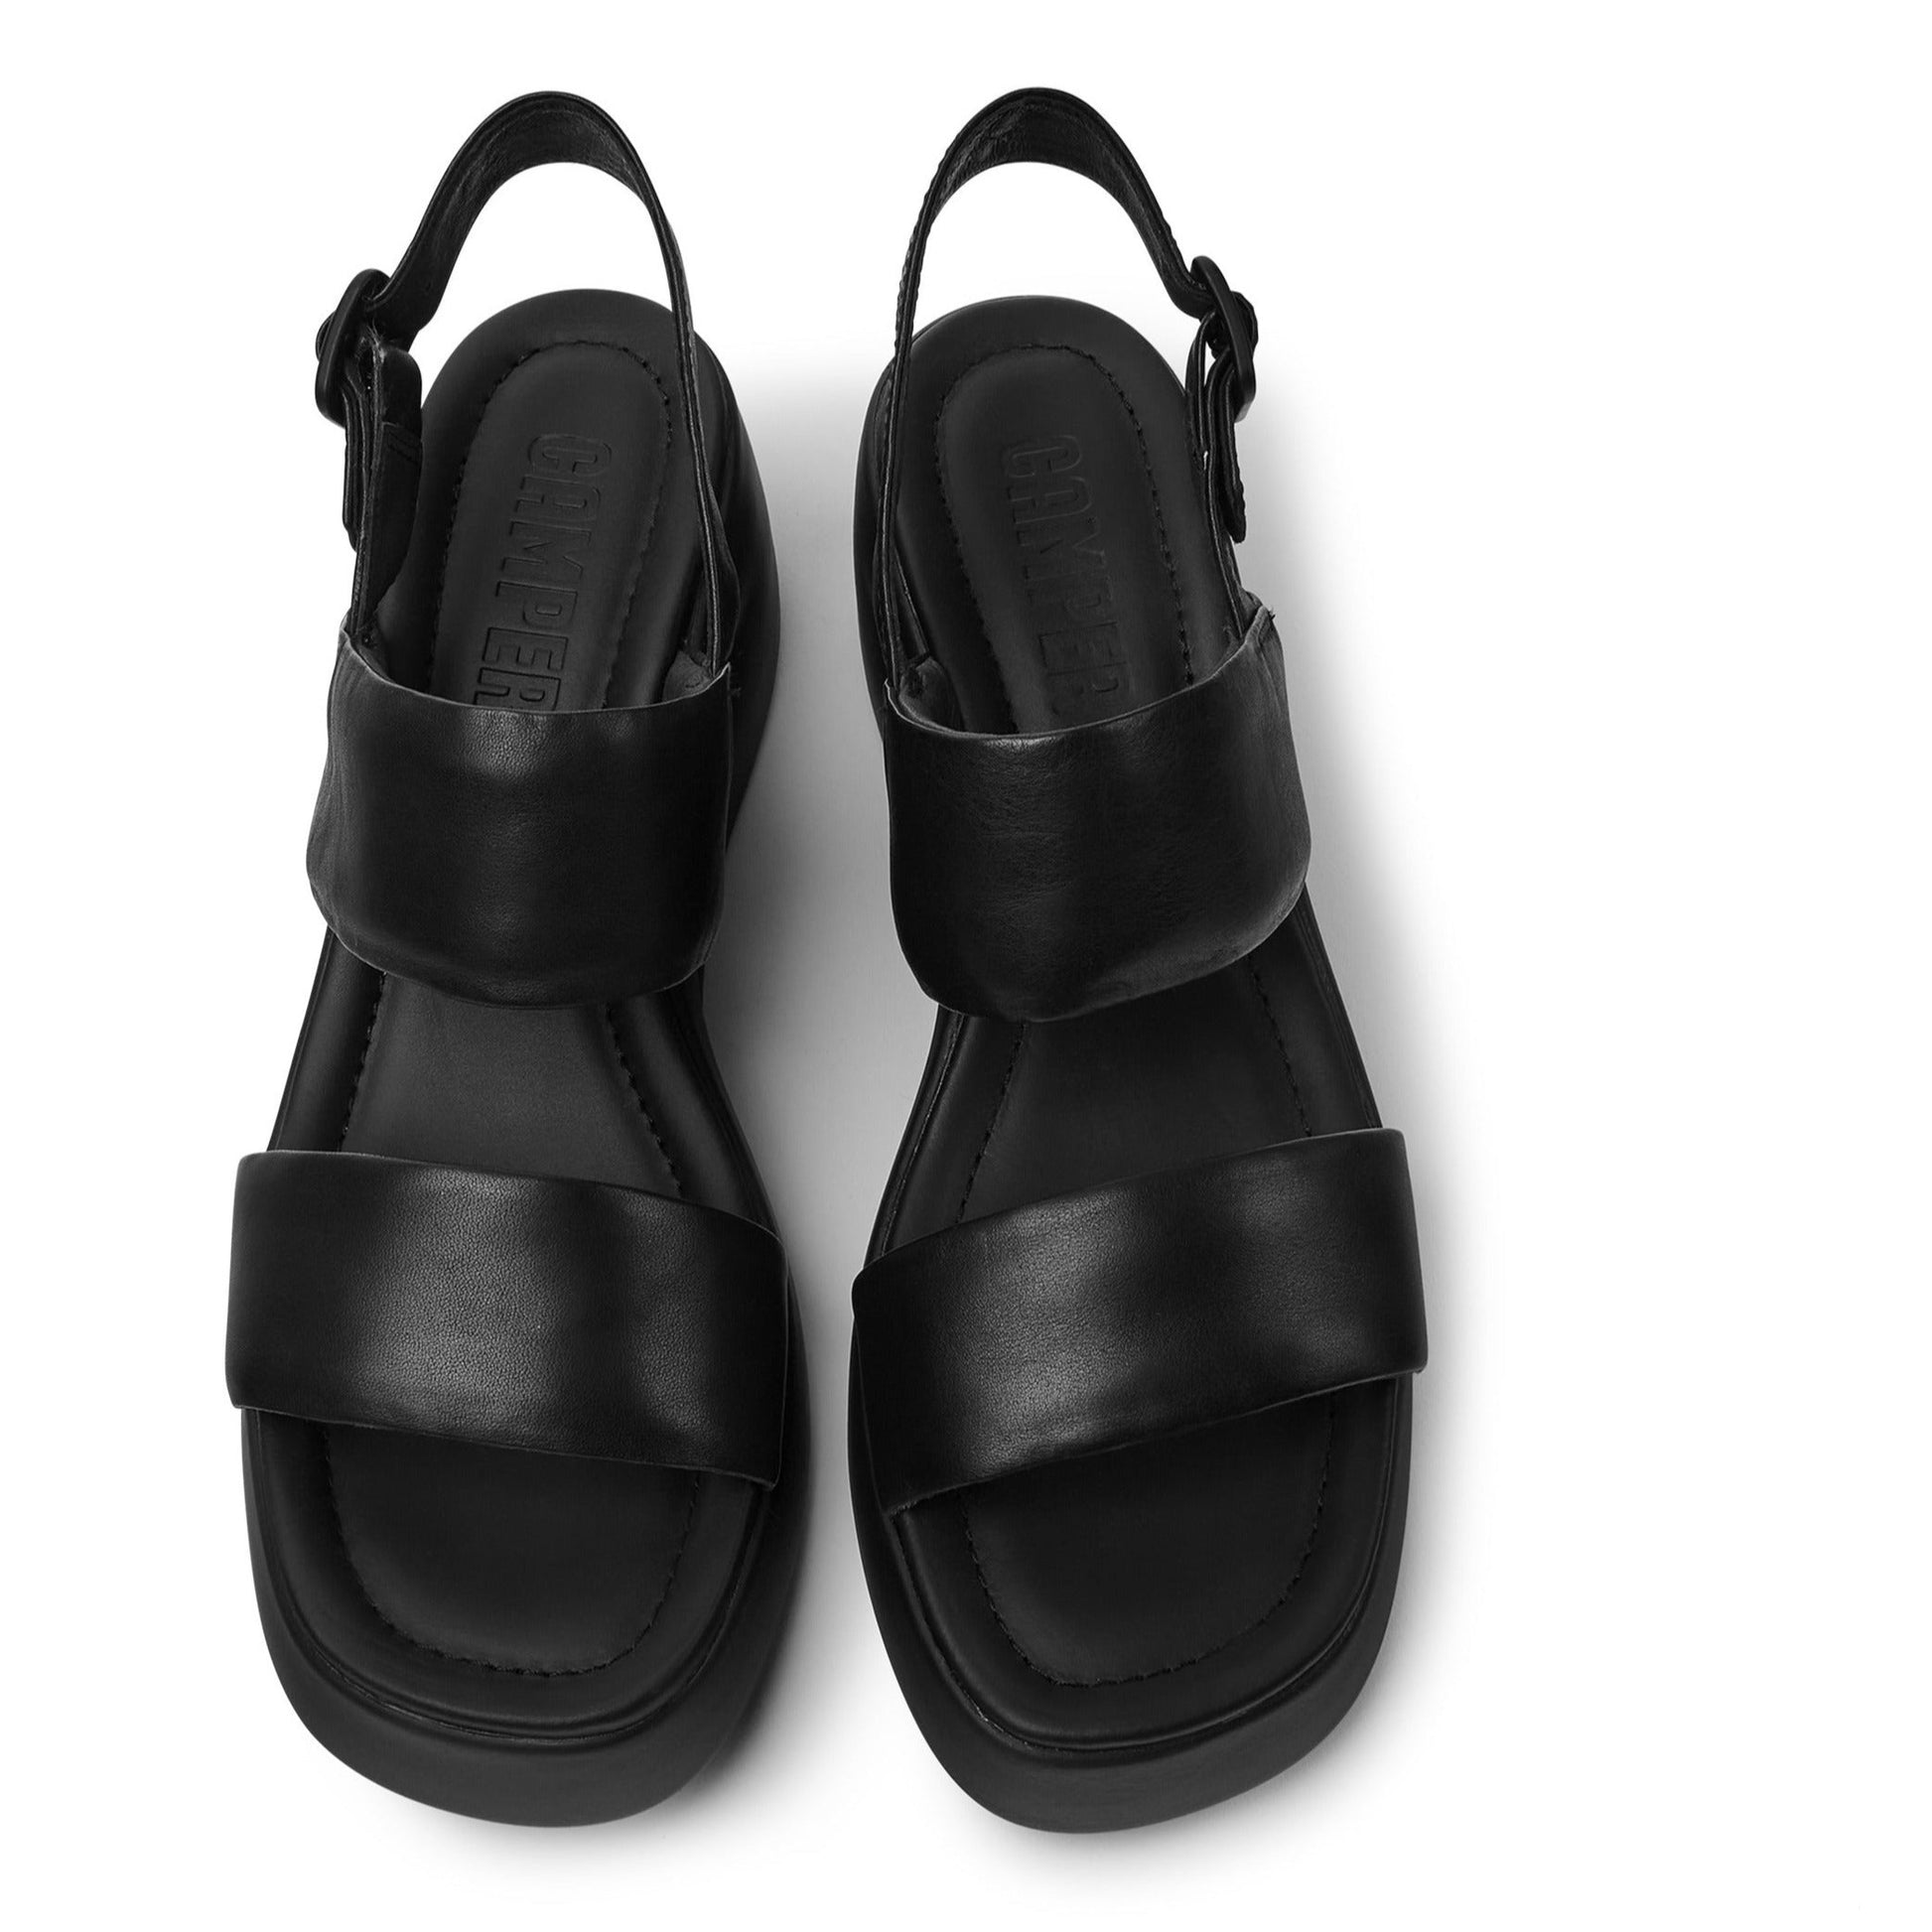 Sandalias De La Marca Camper Para Mujer Modelo Kaah En Color Negro